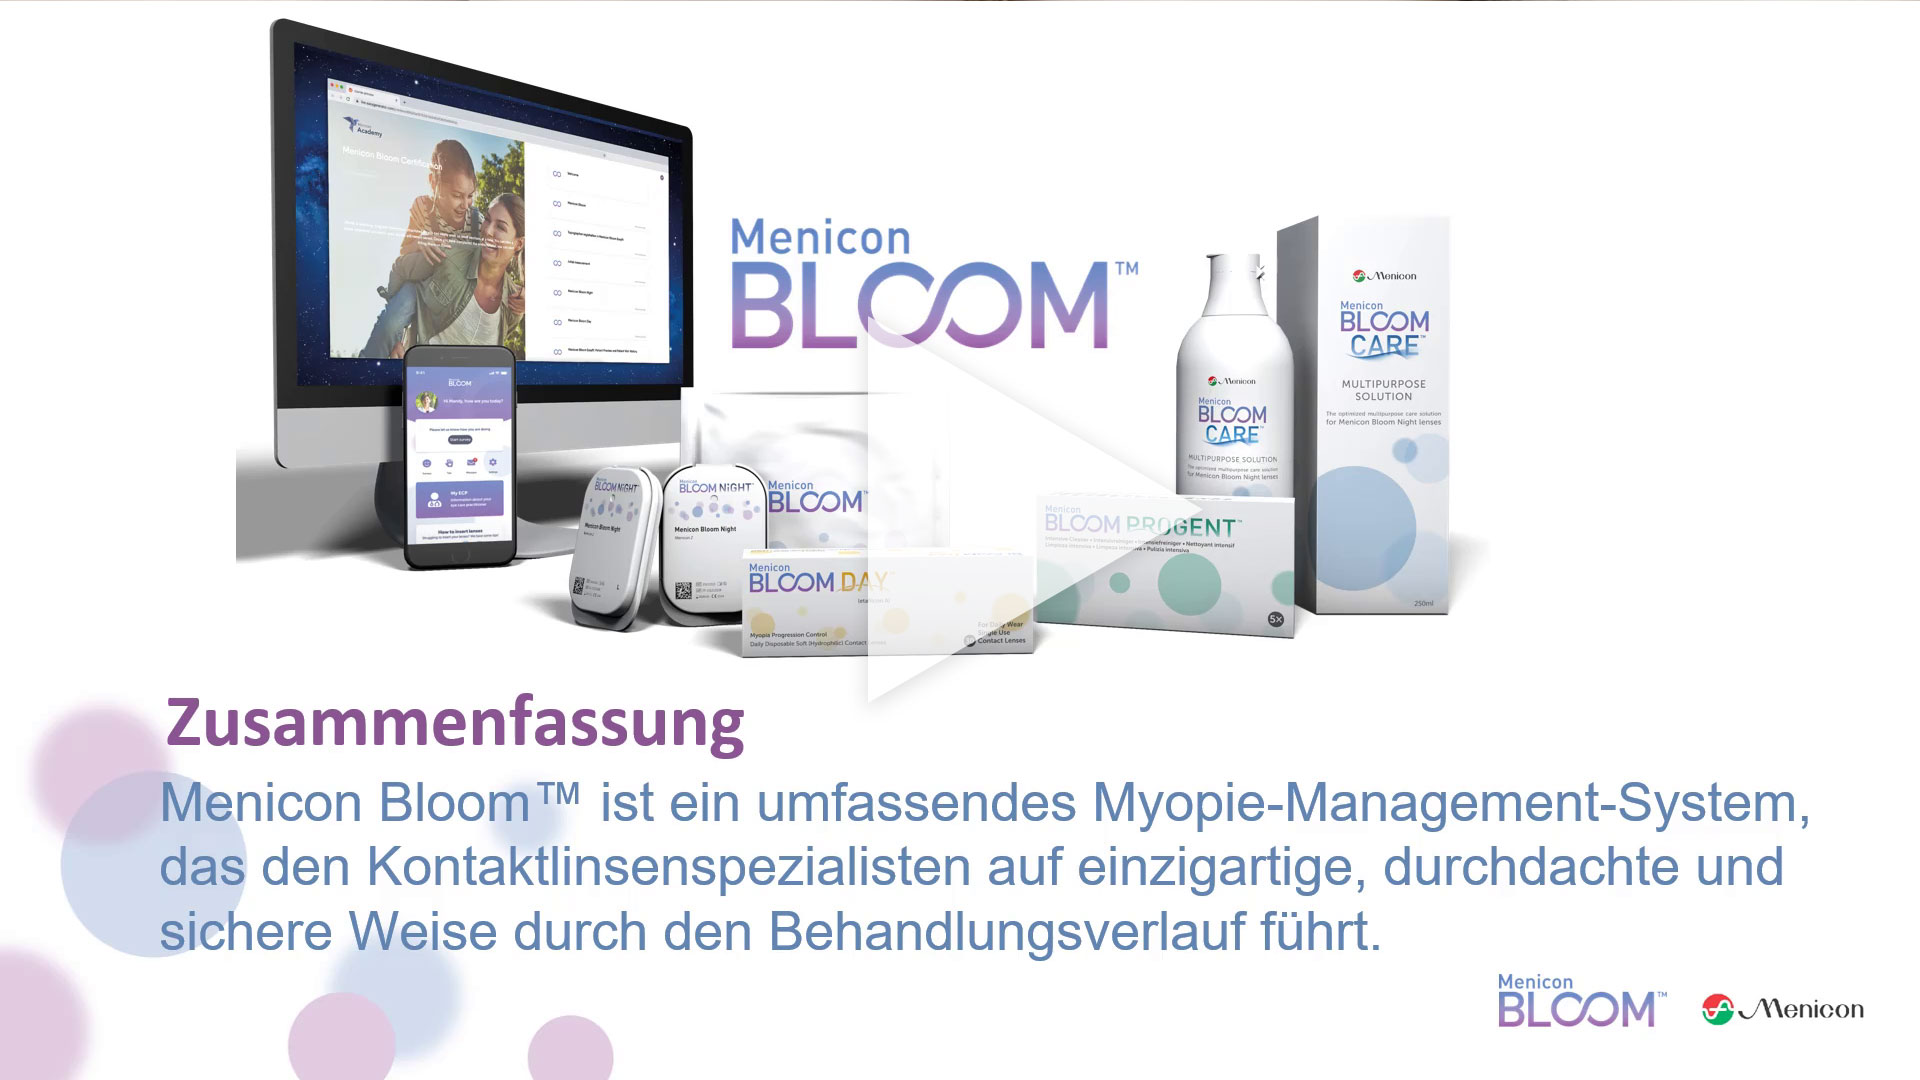 Menicon Bloom ist ein umfassendes Myopie-Management-System für Kontaktlinsenspezialisten.